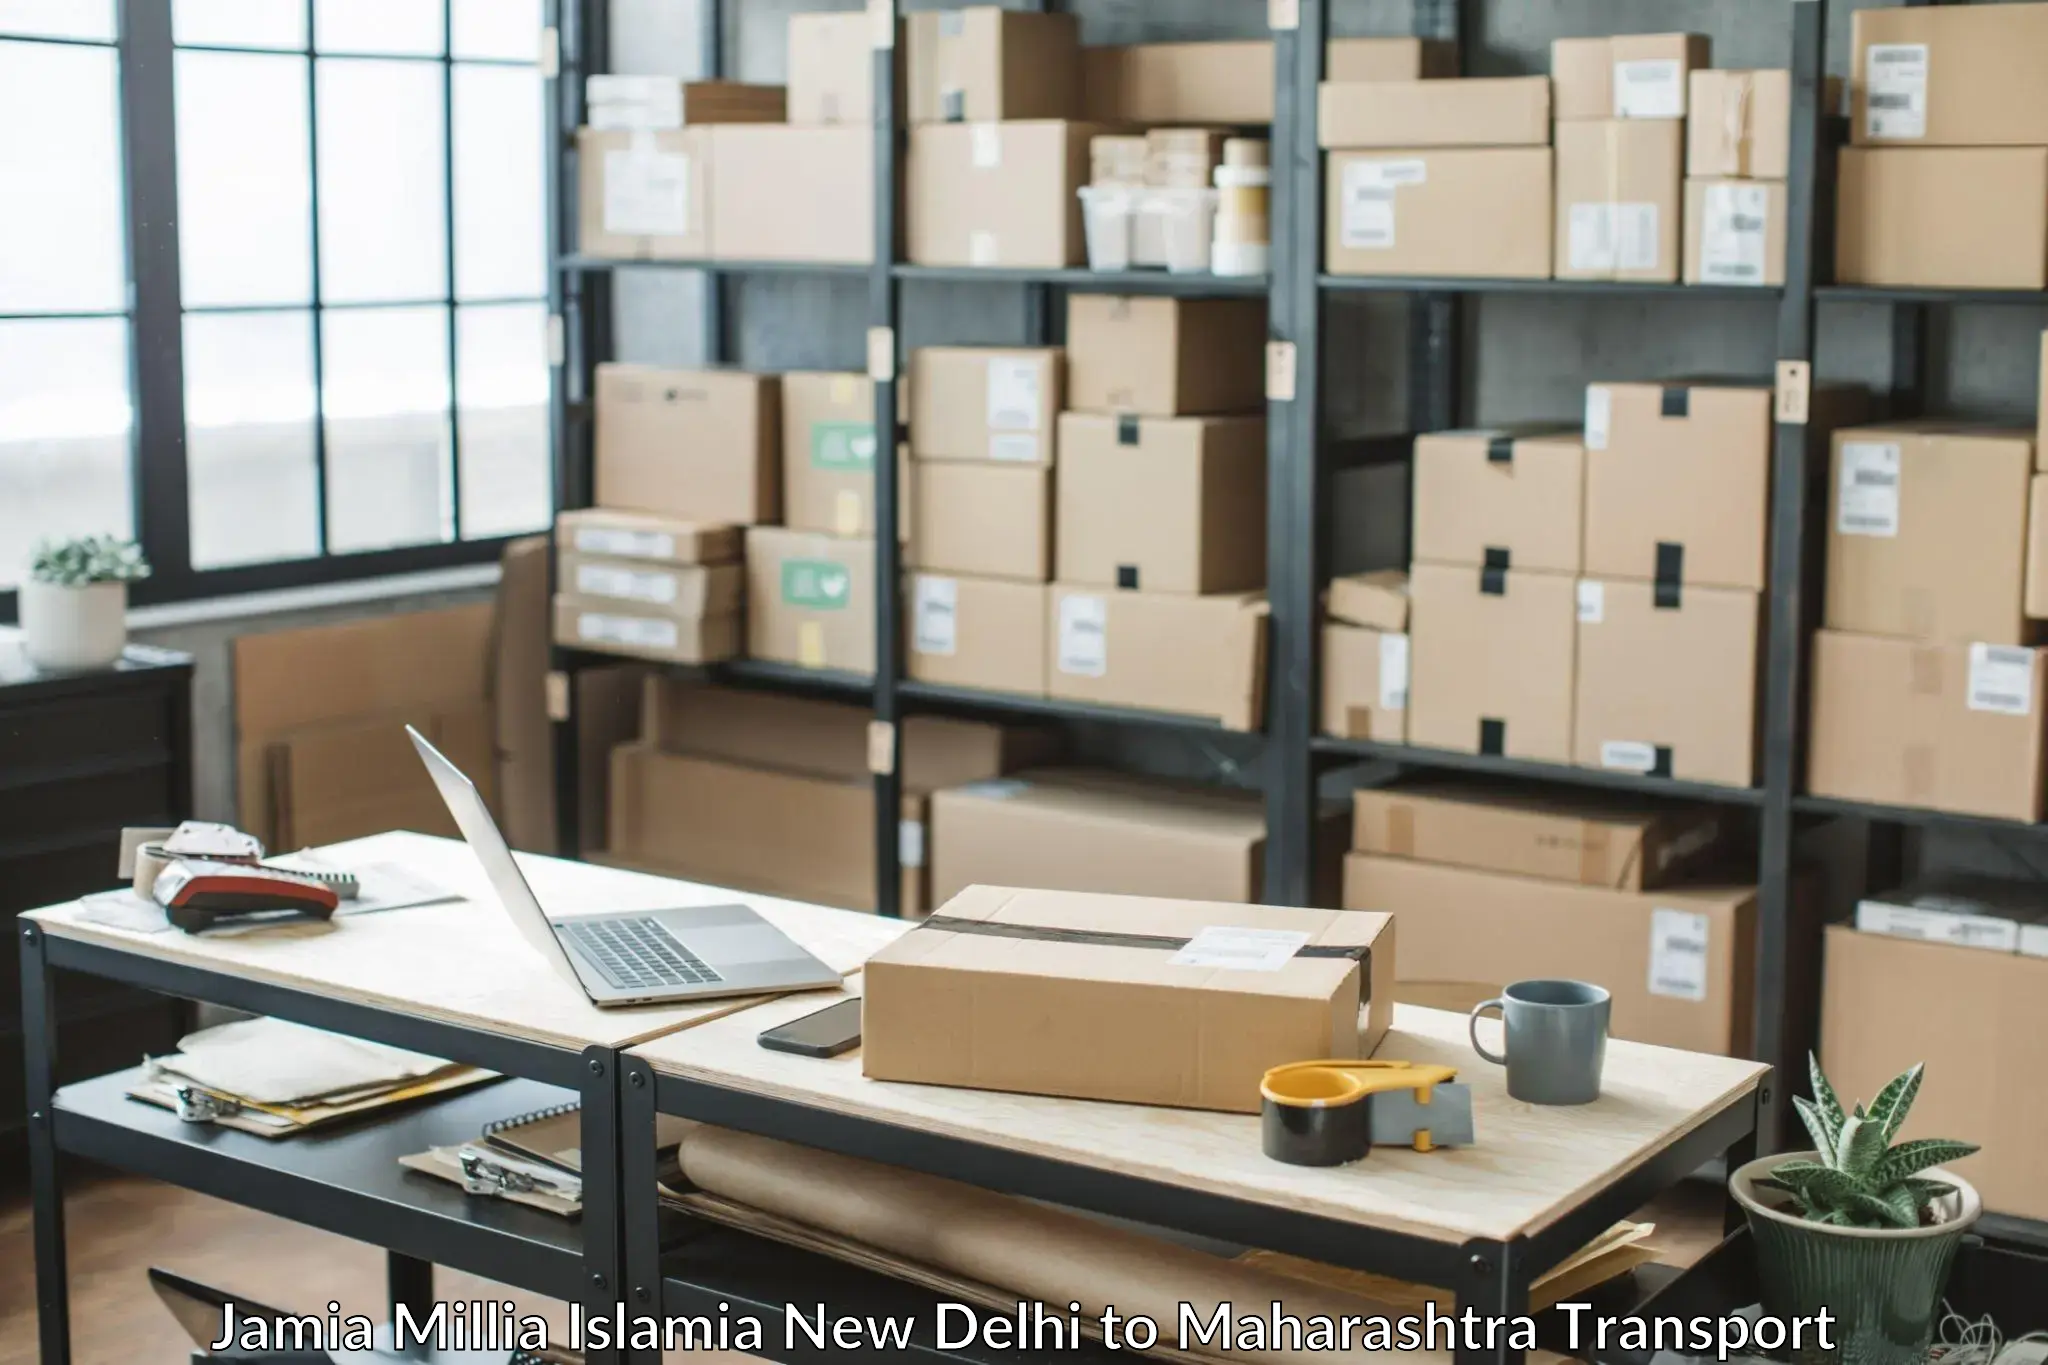 Road transport online services Jamia Millia Islamia New Delhi to Tata Institute of Social Sciences Mumbai